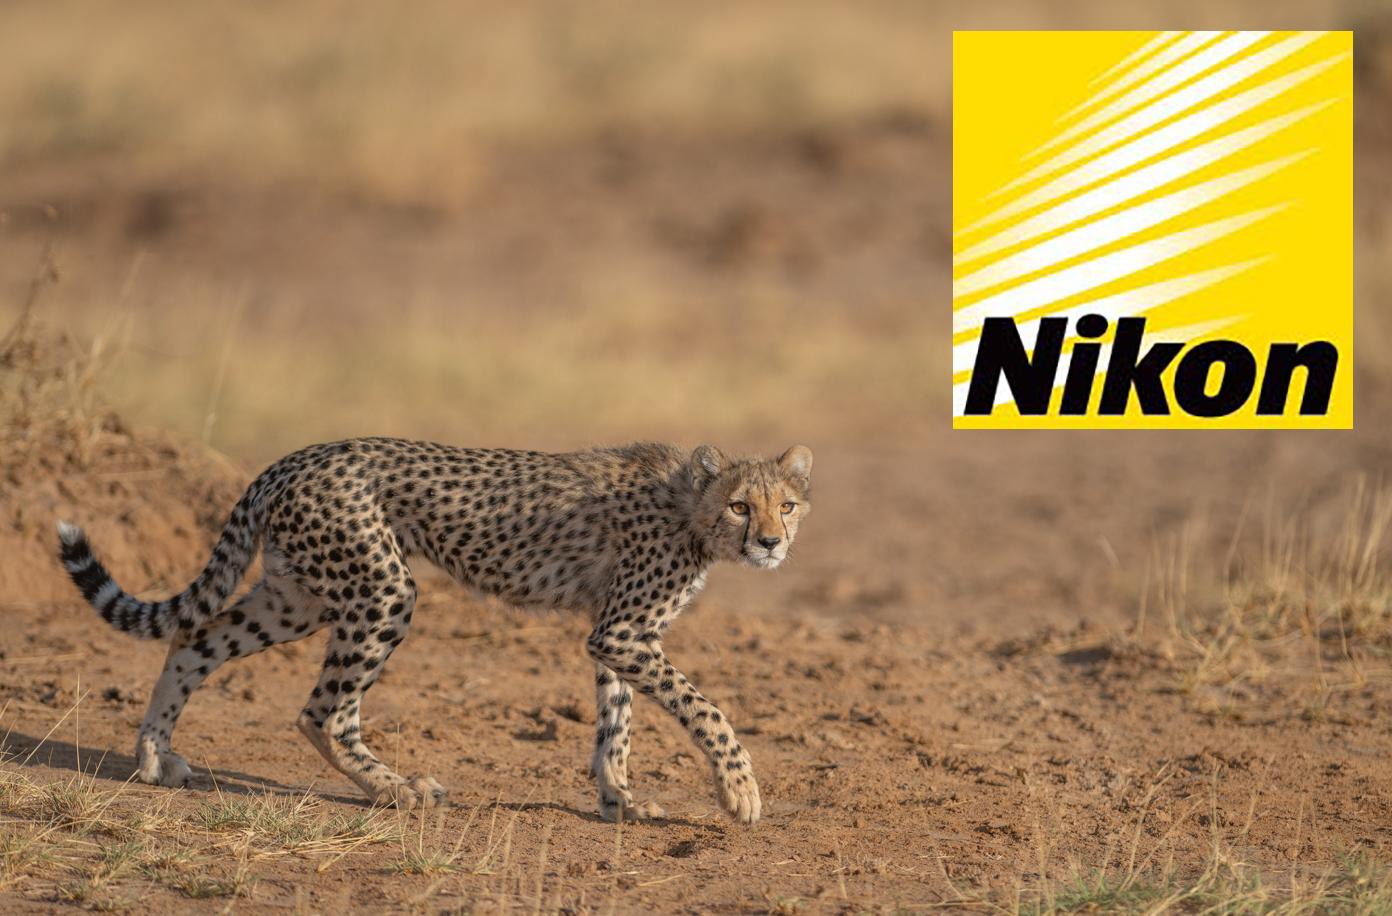 Wandelende cheetawelp met Nikon logo in de rechterbovenhoek